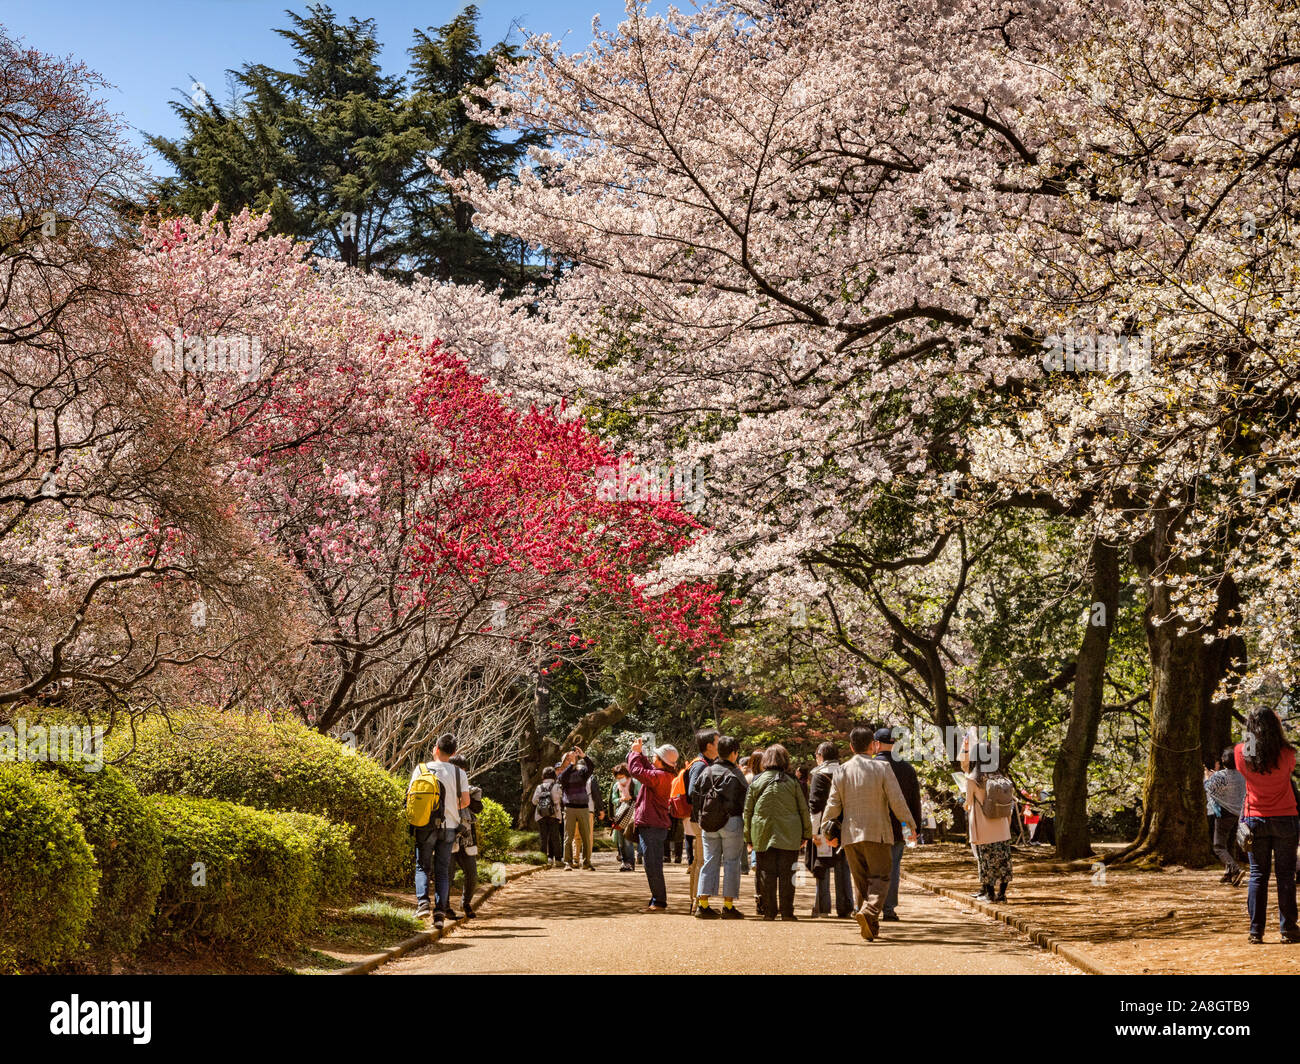 4 Aprile 2019: Tokyo, Giappone - Visitatori ammassato ammirare la fioritura dei ciliegi a Shinjuku Gyoen il Giardino Nazionale, Tokyo, in fiore di ciliegio stagione. Foto Stock